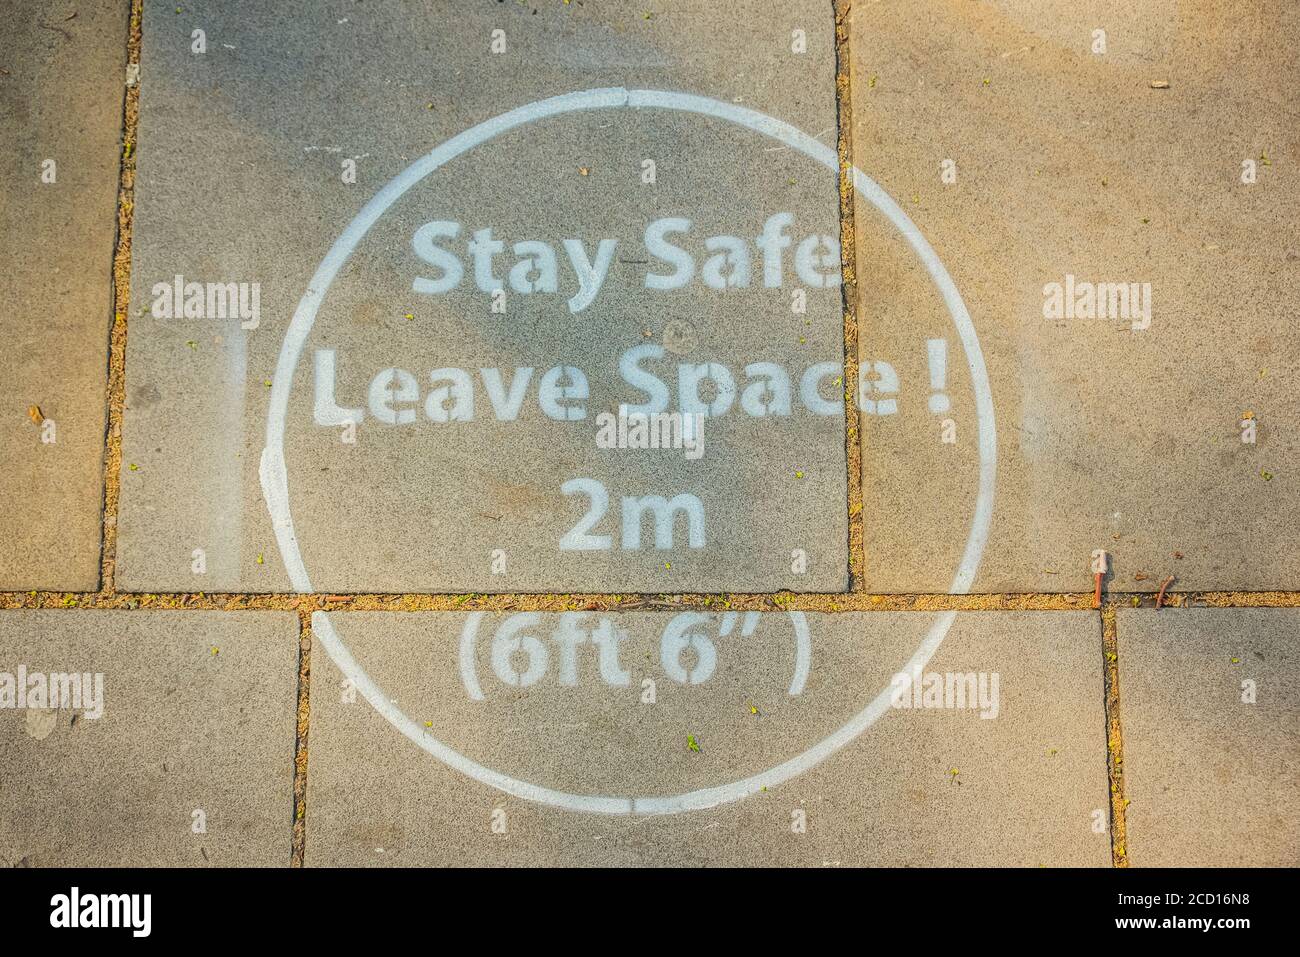 Indicatore di distanza fisico sul marciapiede che ricorda di mantenere uno spazio sicuro di due metri (6 piedi), Covid-19 World Pandemic; Londra, Inghilterra Foto Stock